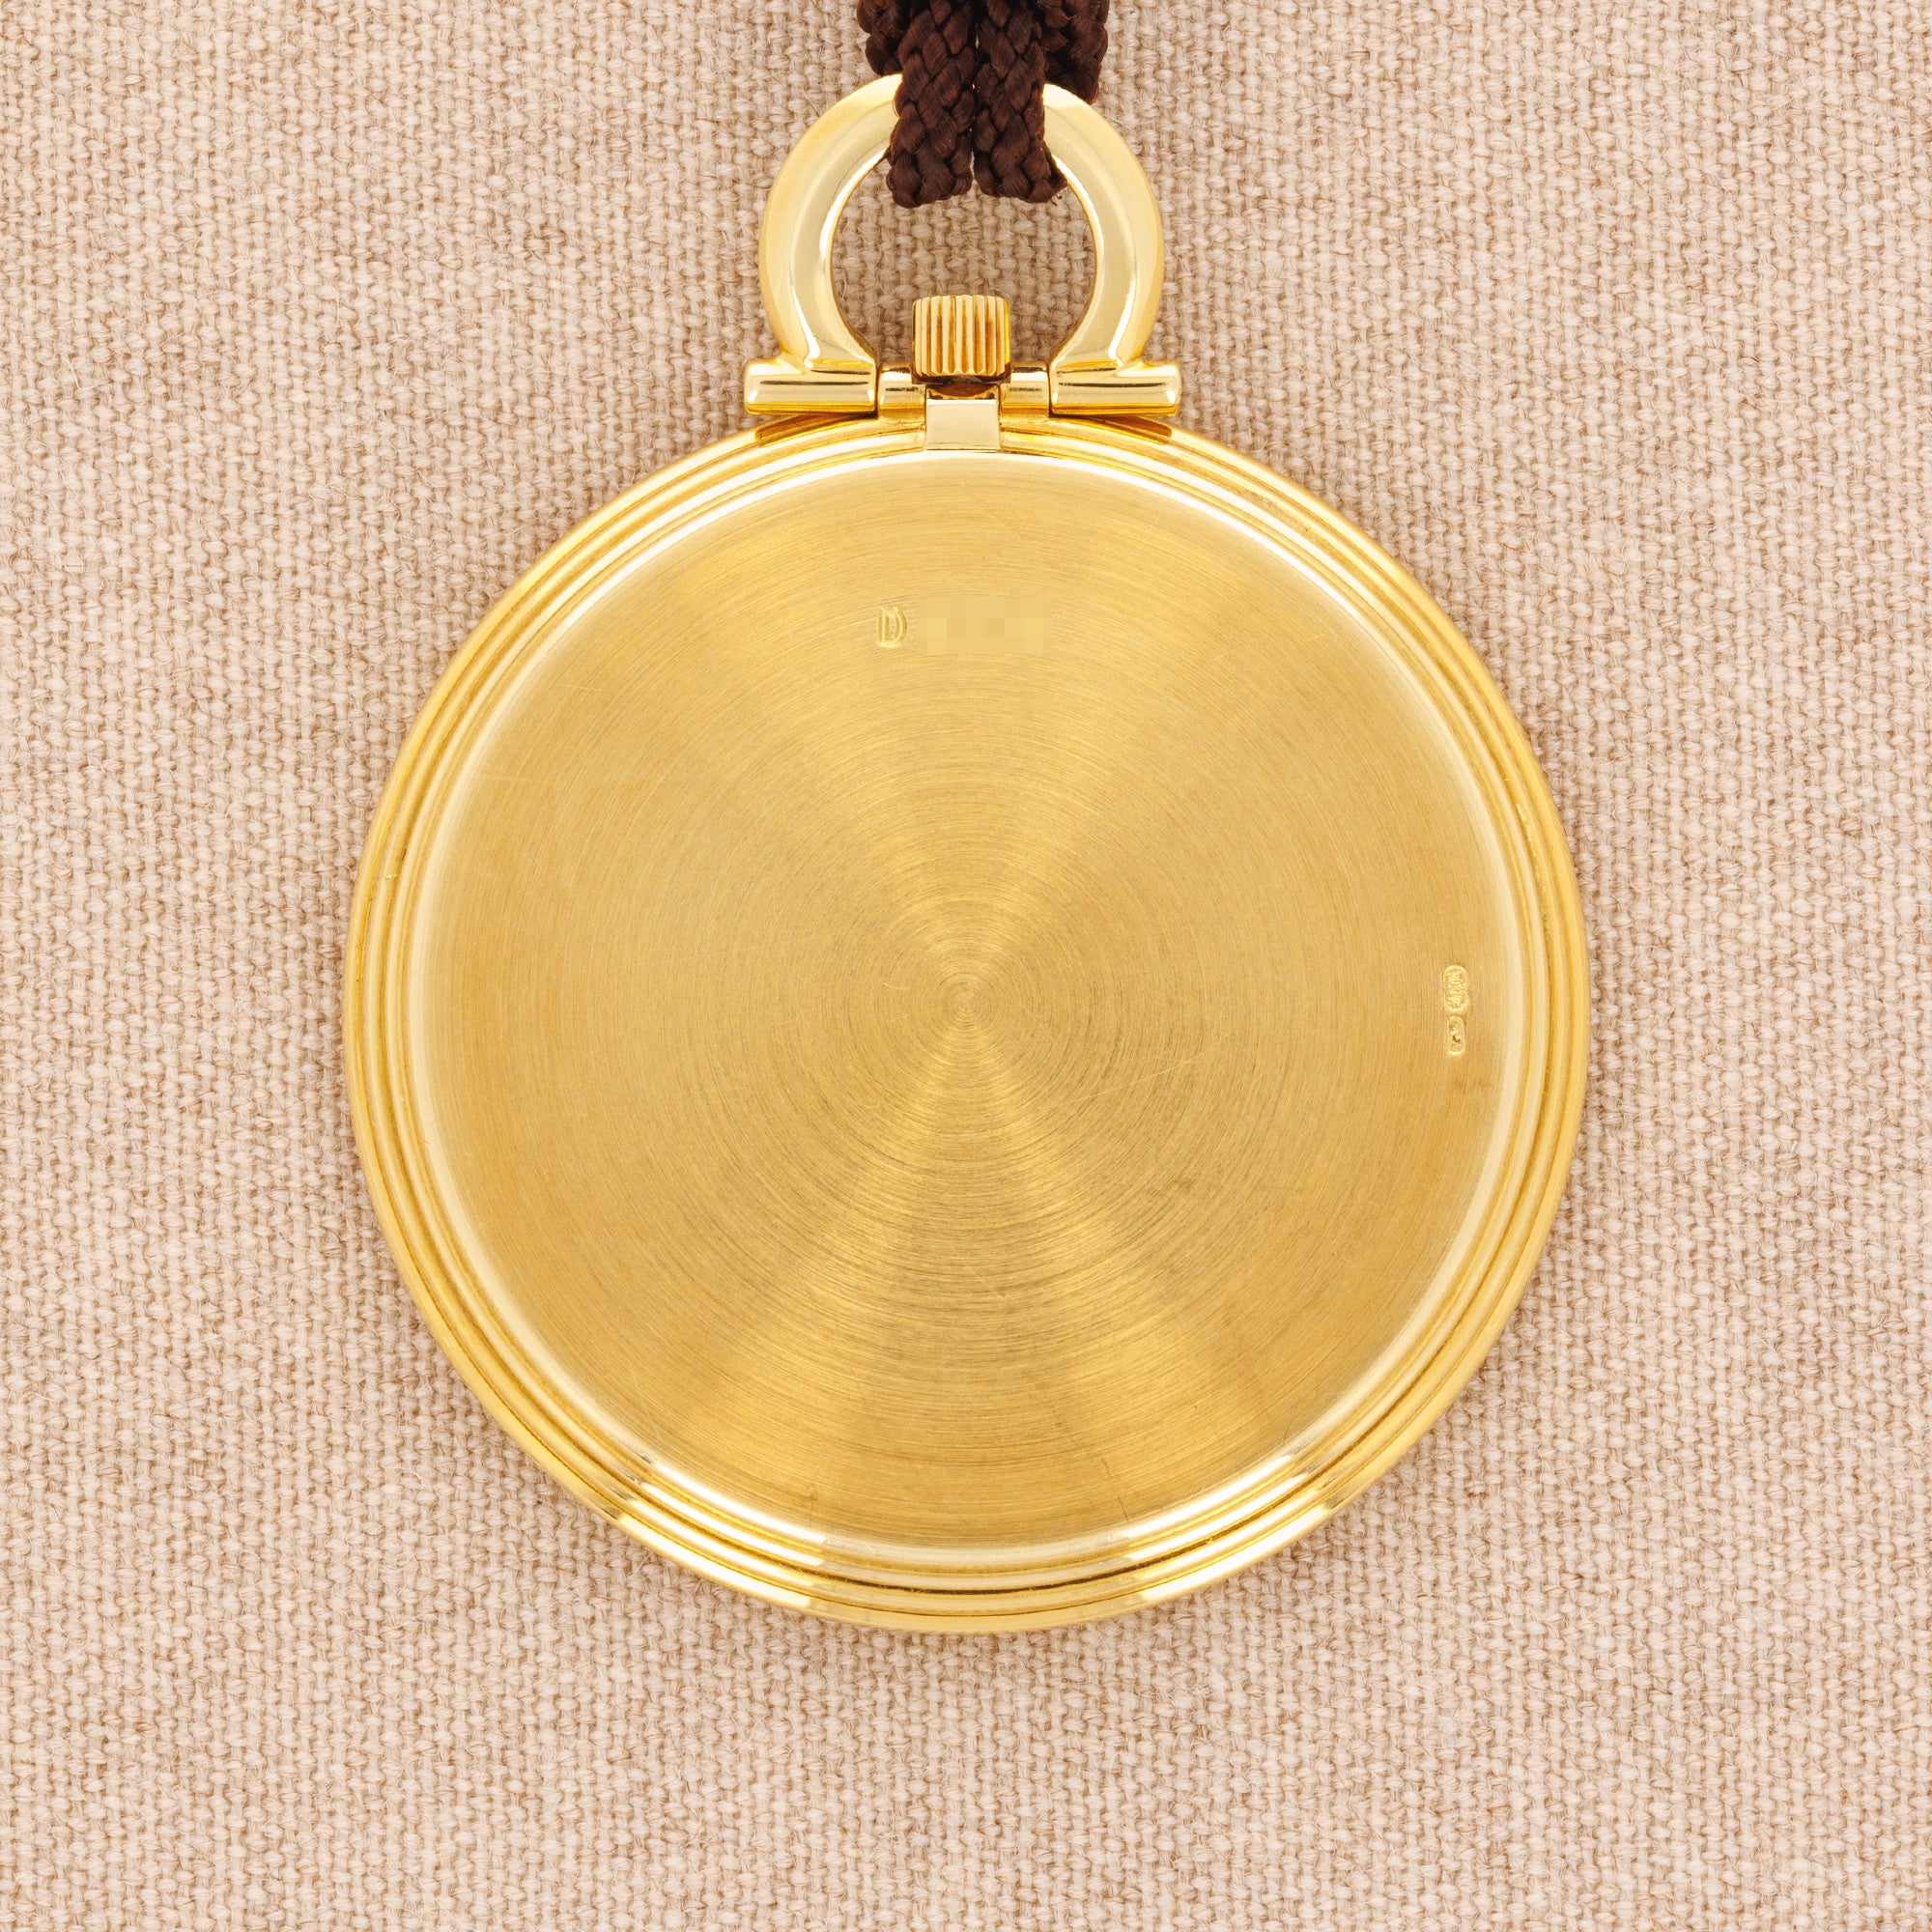 Audemars Piguet - Audemars Piguet Yellow Gold Pocket Watch - The Keystone Watches